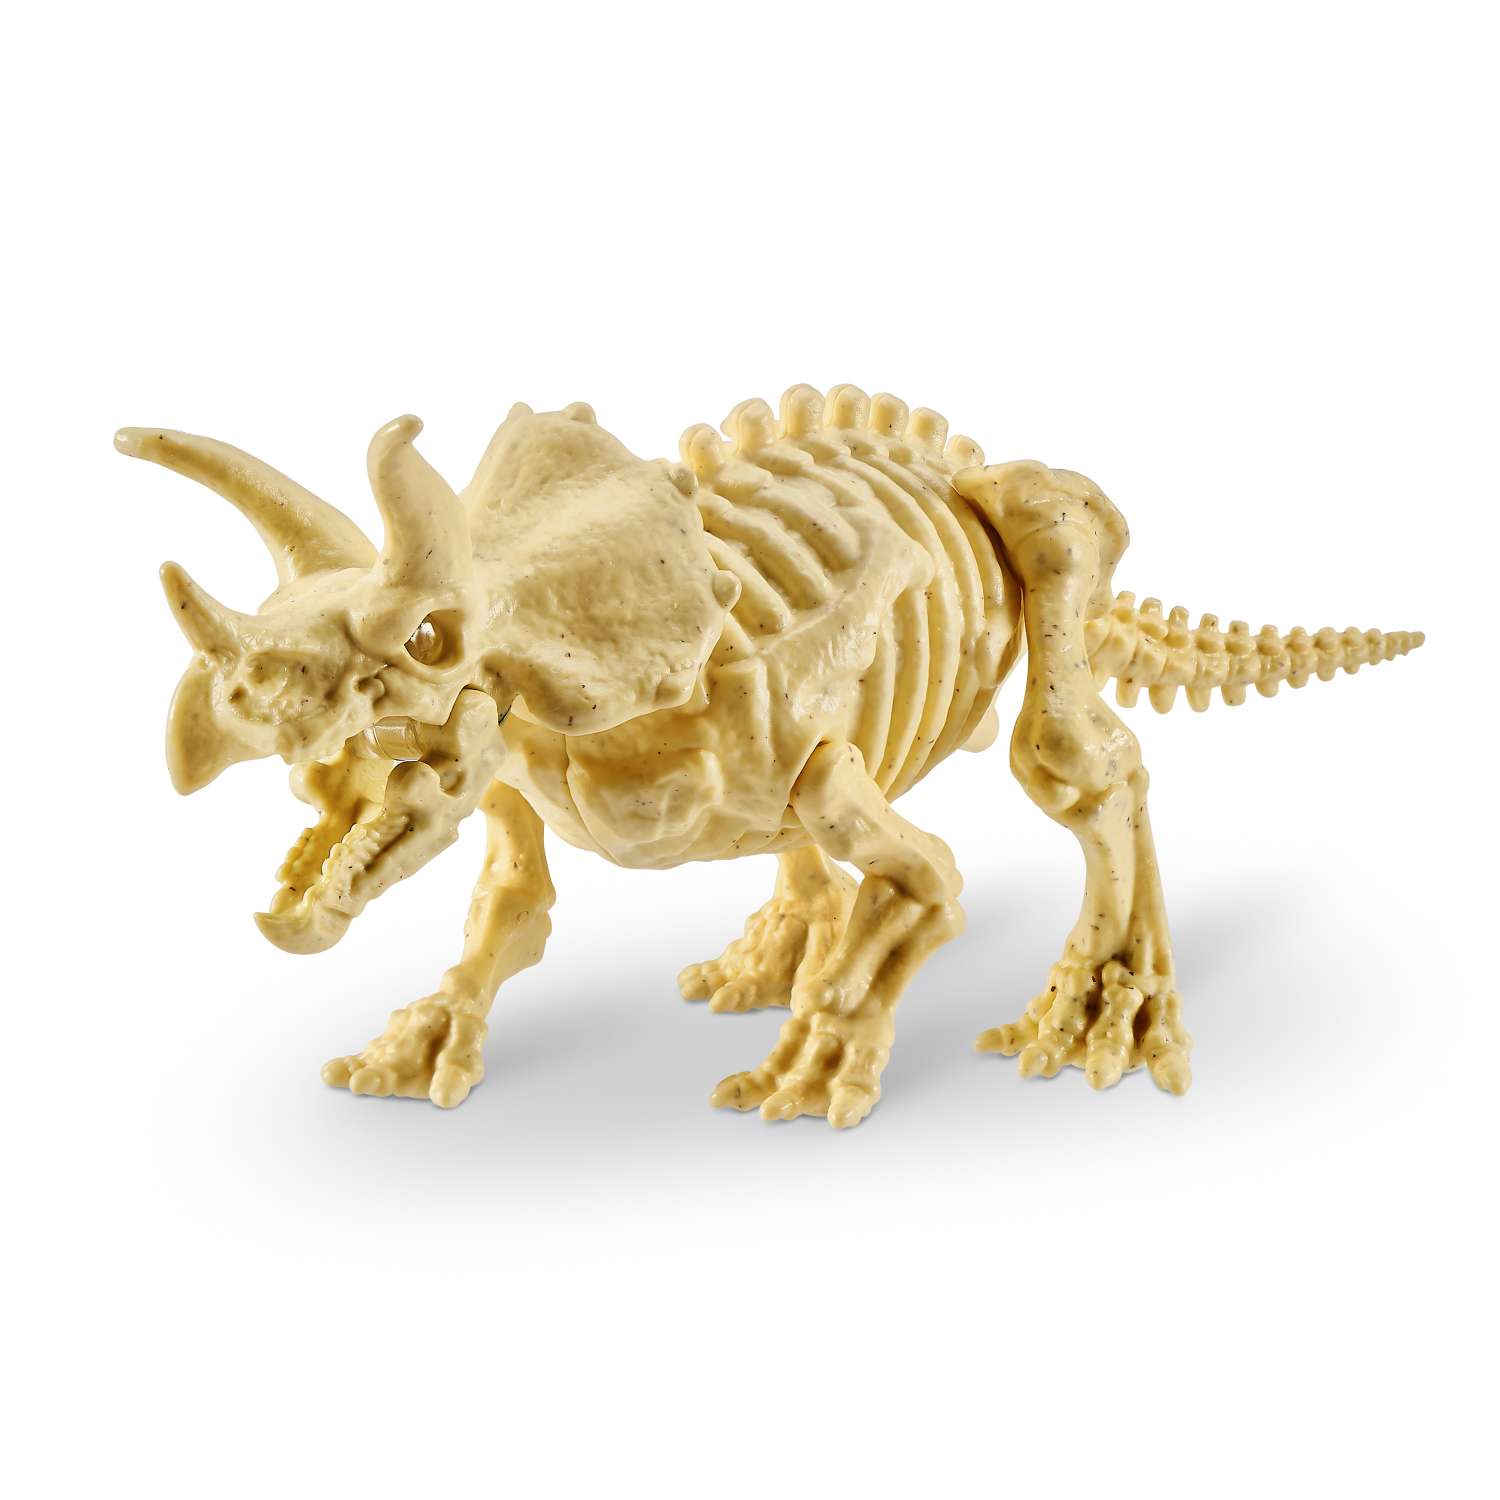 Набор игровой Zuru Robo Alive Dino Fossil Find Яйцо в непрозрачной упаковке (Сюрприз) 7156 - фото 10